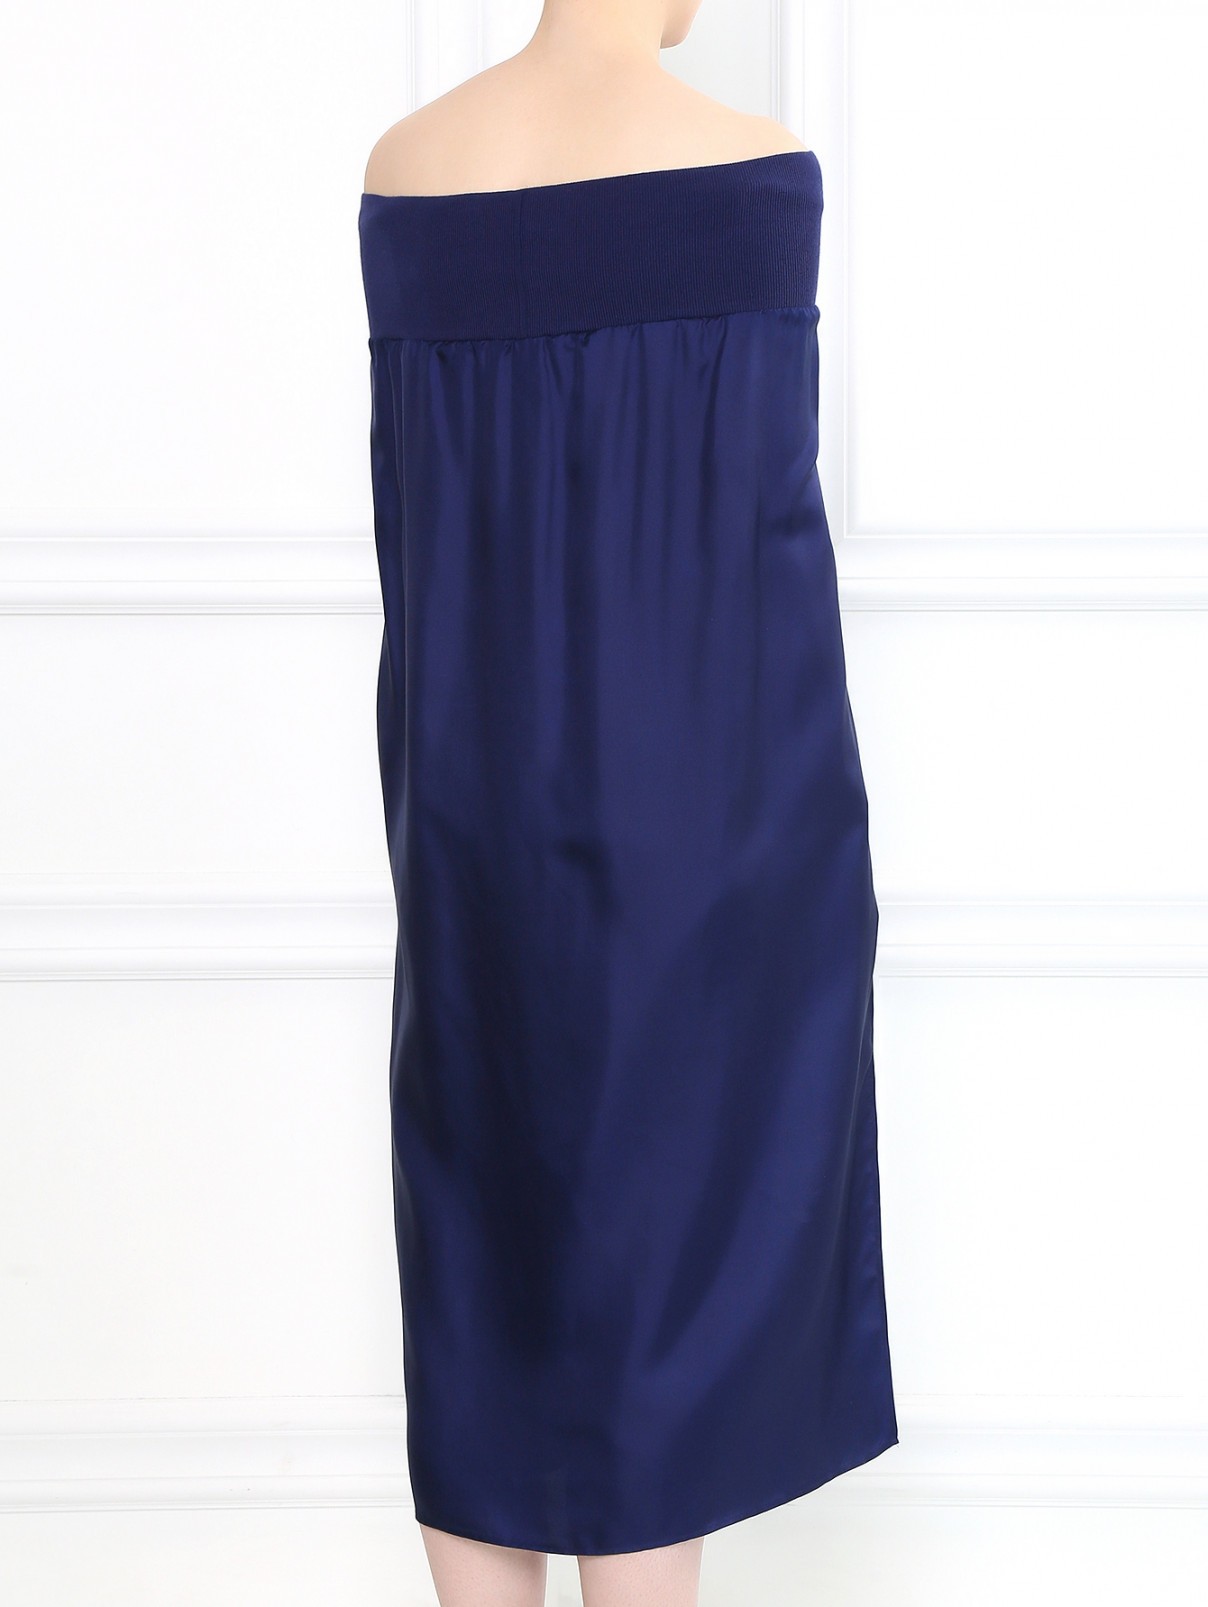 Платье свободного фасона из шелка на резинке Veronique Branquinho  –  Модель Верх-Низ1  – Цвет:  Синий